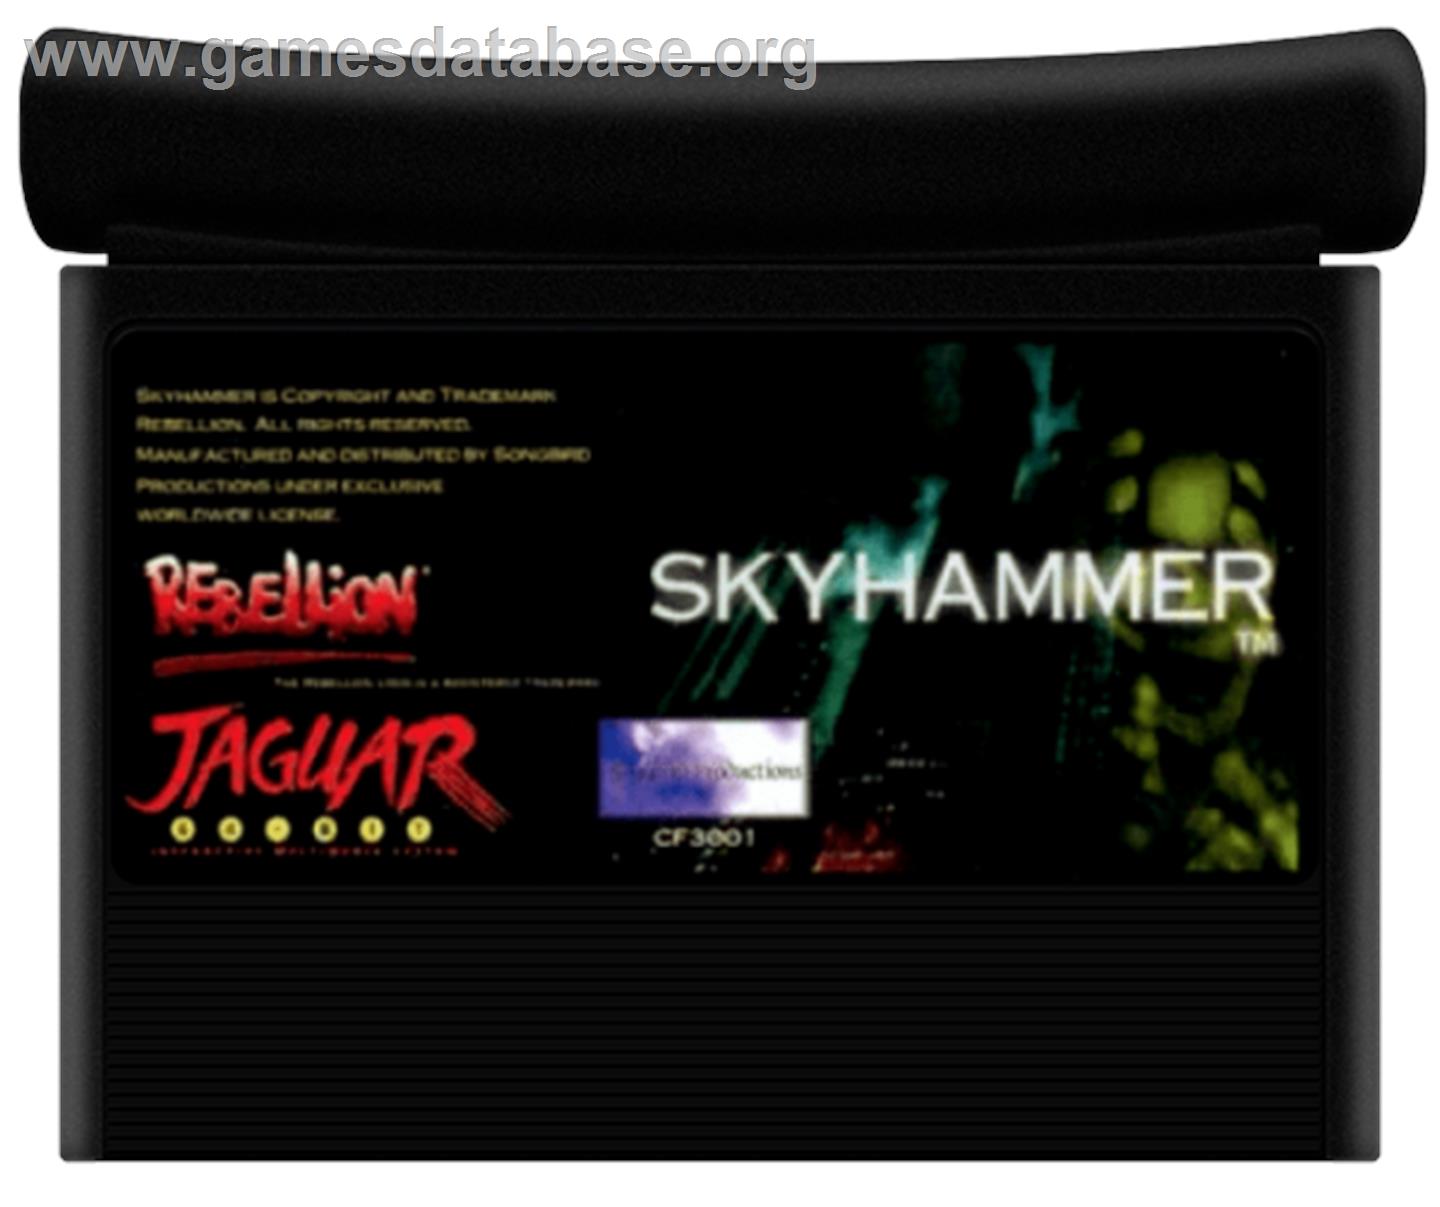 Skyhammer - Atari Jaguar - Artwork - Cartridge